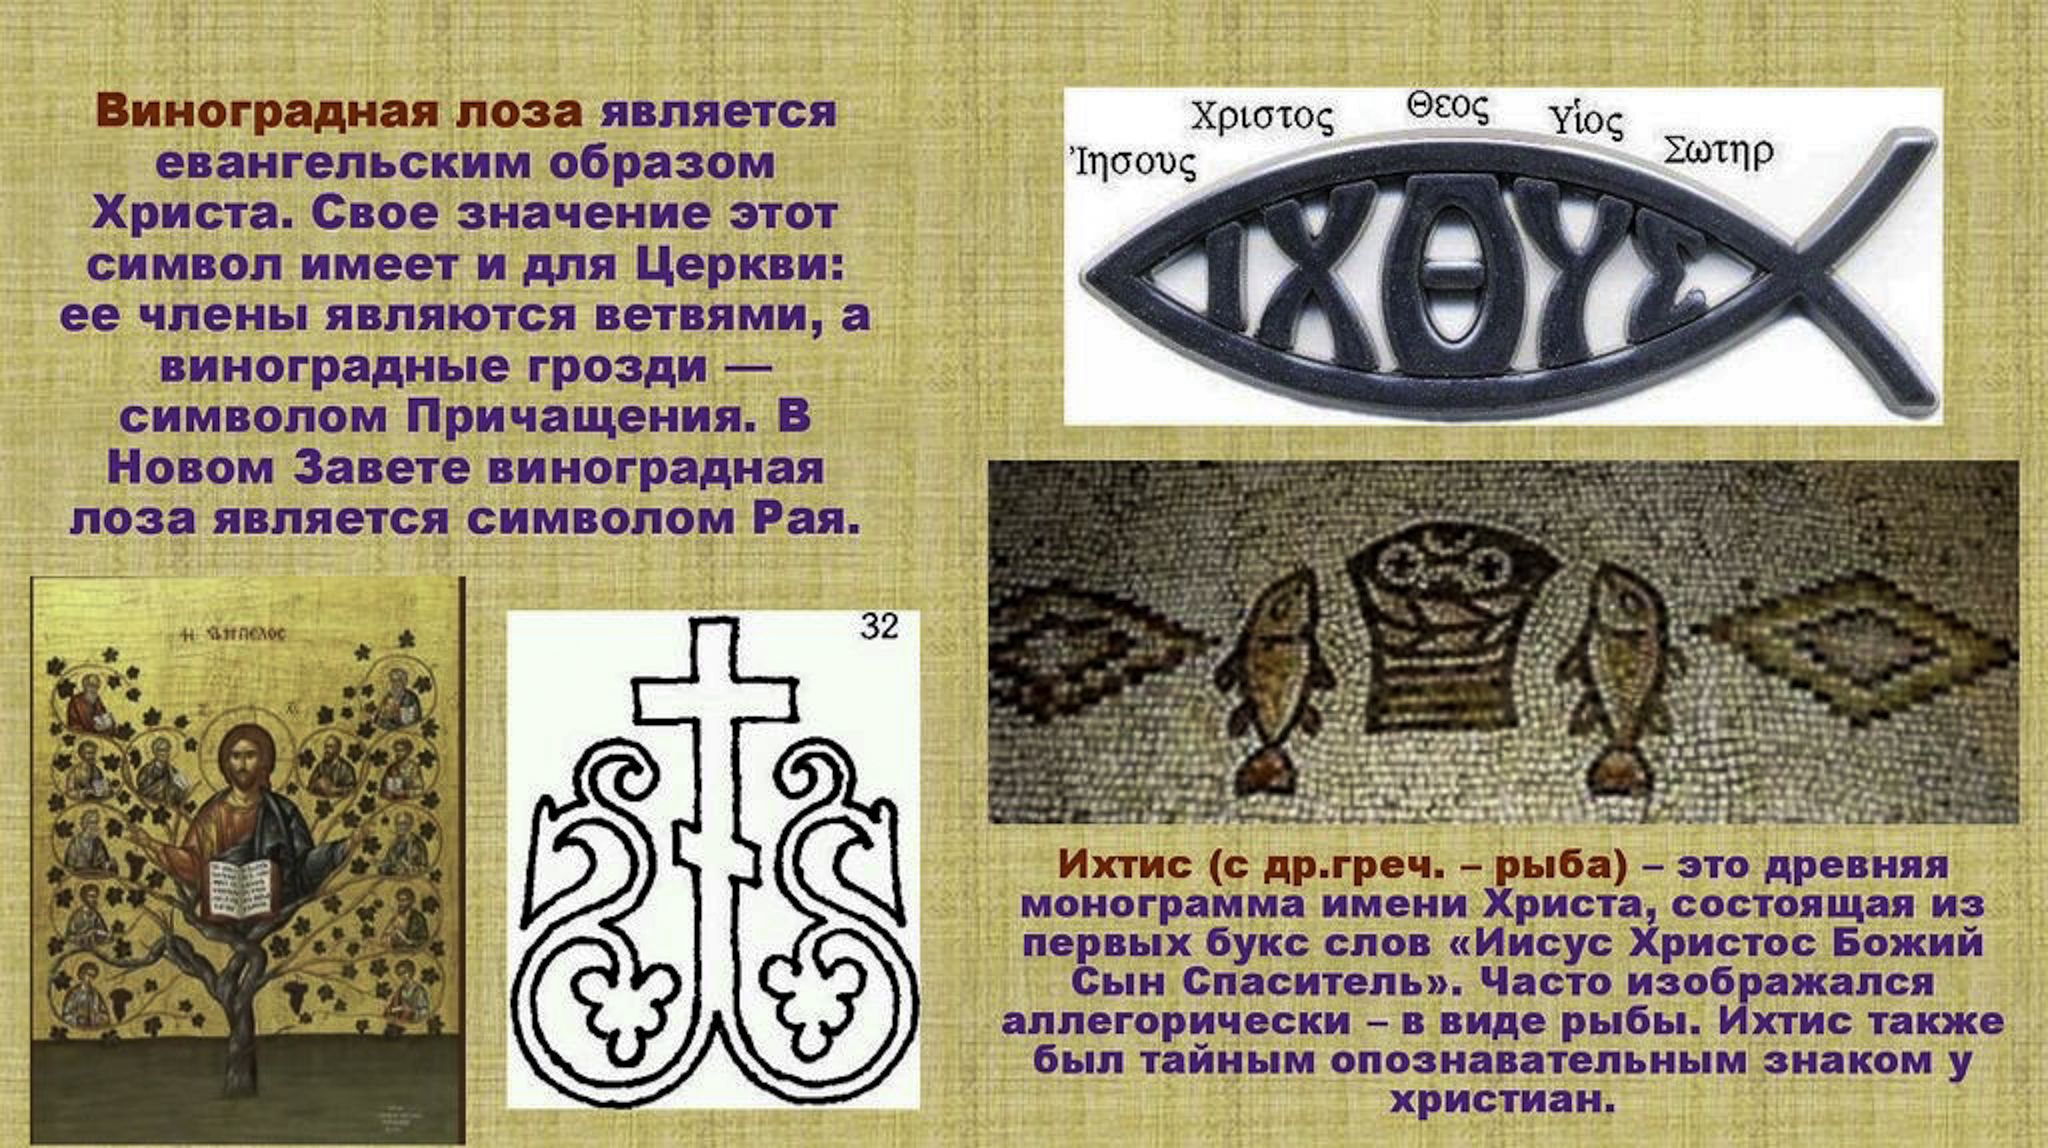 Изображение или символ какого либо предмета. Православные символы. Символы христианства. Древний христианский символ. Древний символ христианства.